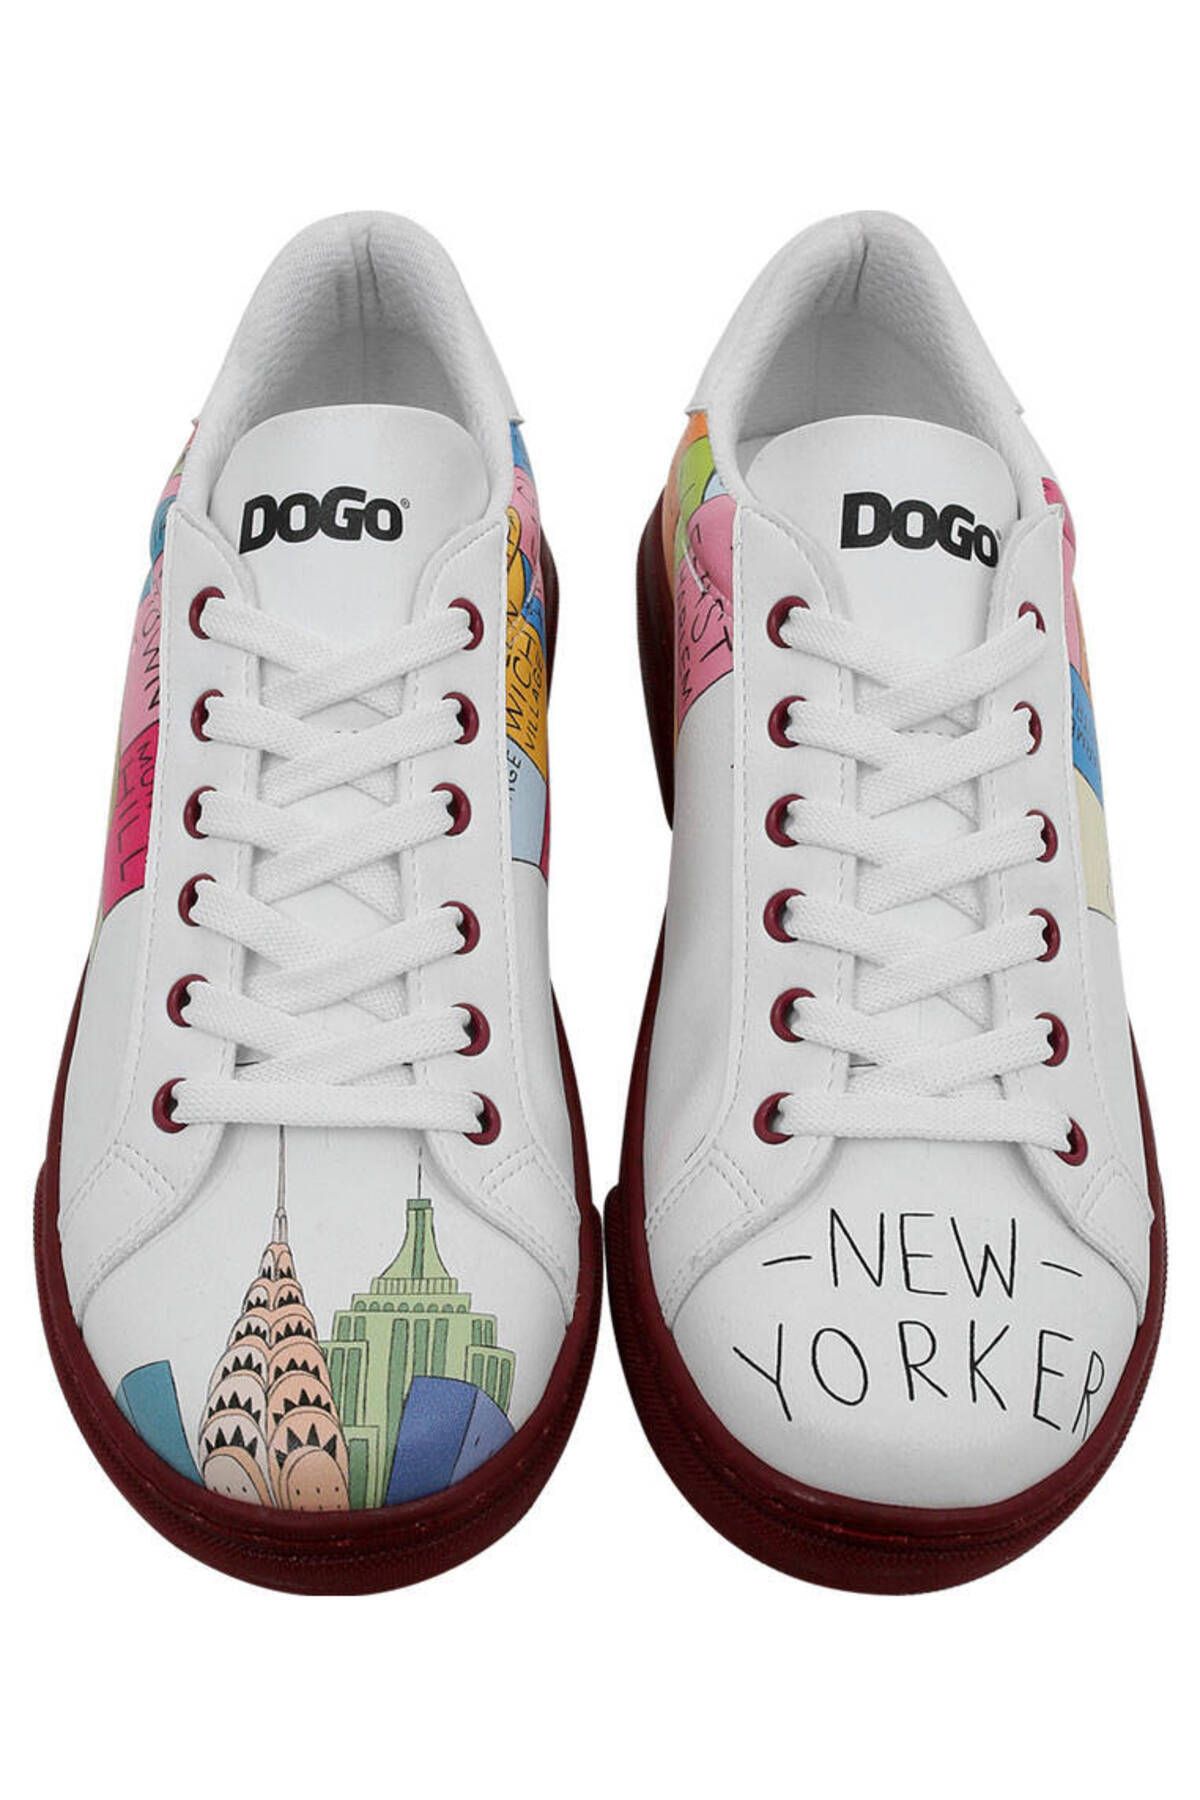 Dogo Kadın Vegan Deri Beyaz Sneakers - Manhattan Tasarım